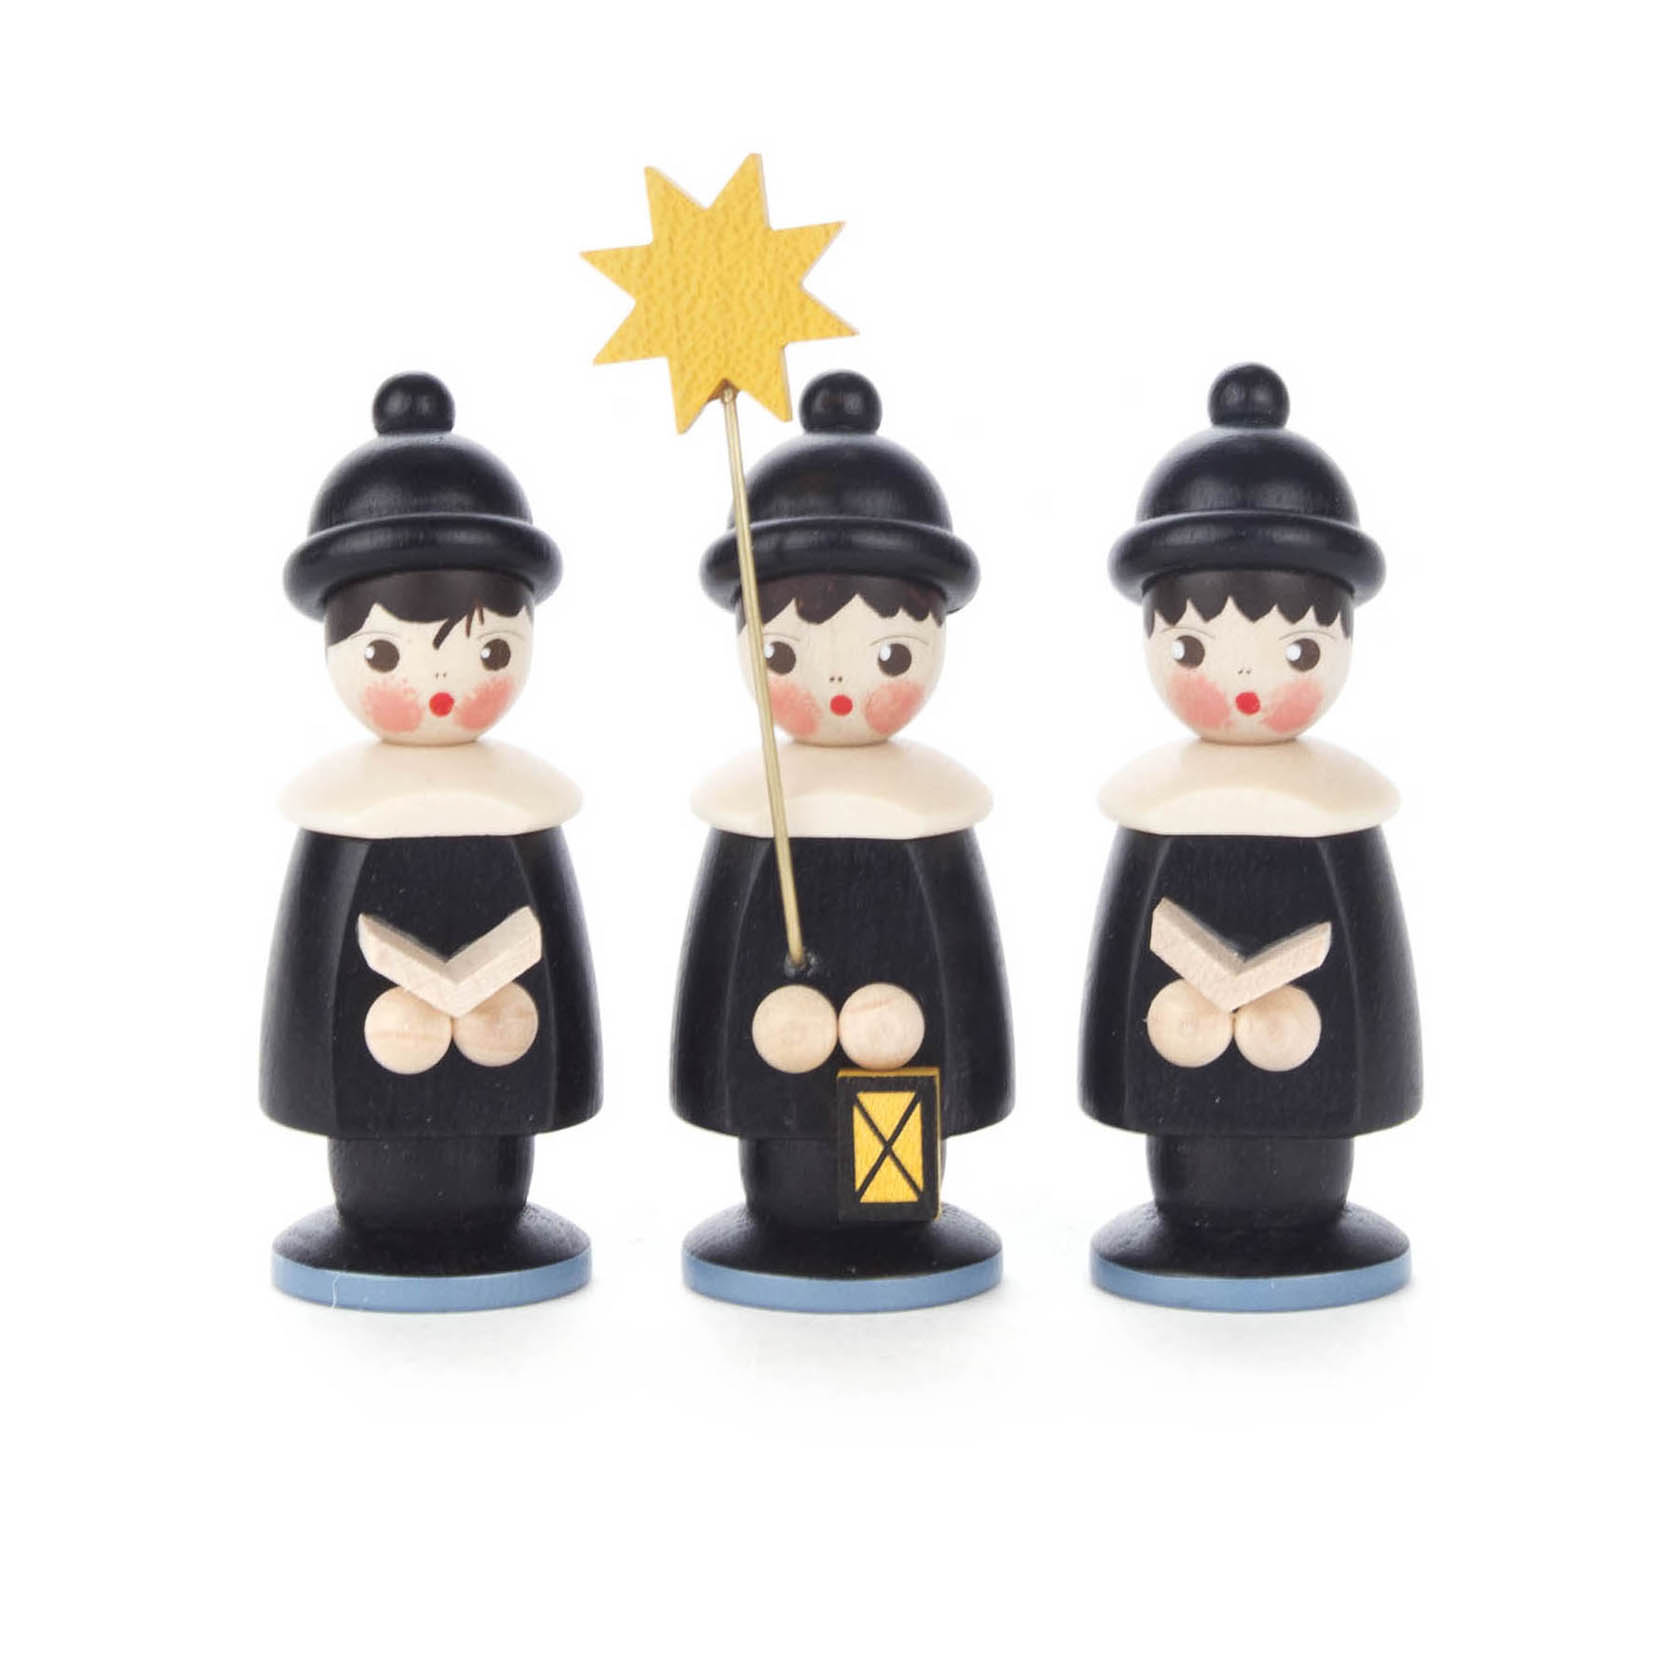 Kurrendefiguren schwarz, 7,5cm (3) im Dregeno Online Shop günstig kaufen